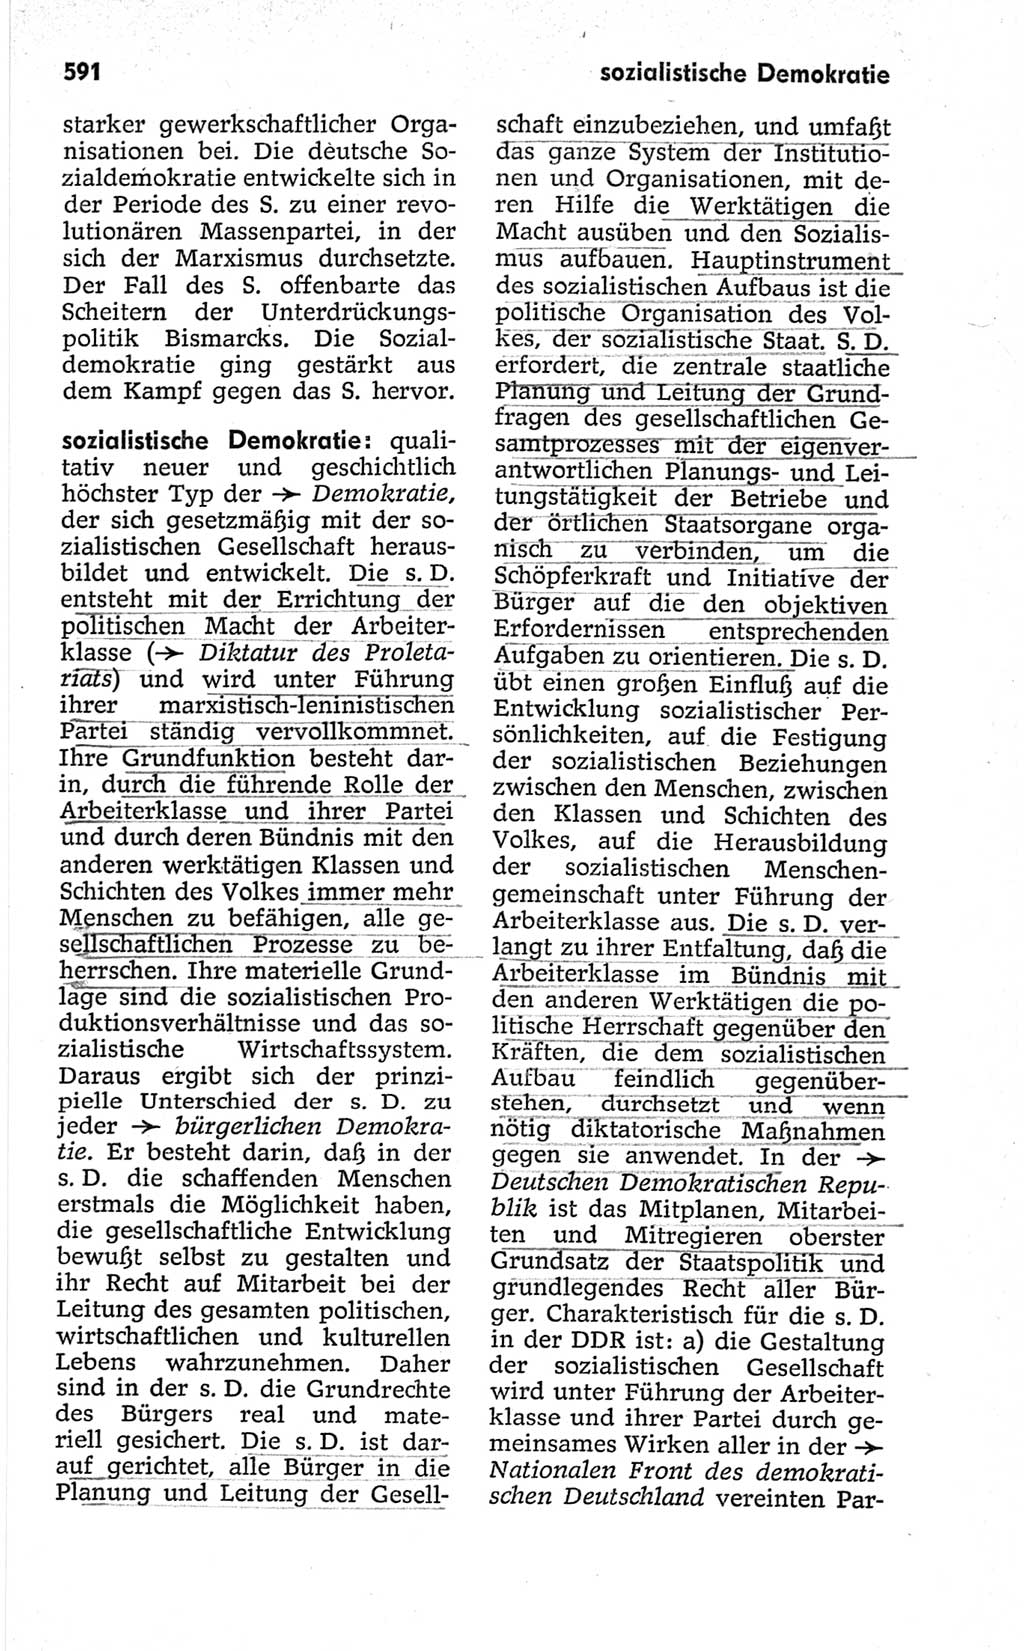 Kleines politisches Wörterbuch [Deutsche Demokratische Republik (DDR)] 1967, Seite 591 (Kl. pol. Wb. DDR 1967, S. 591)